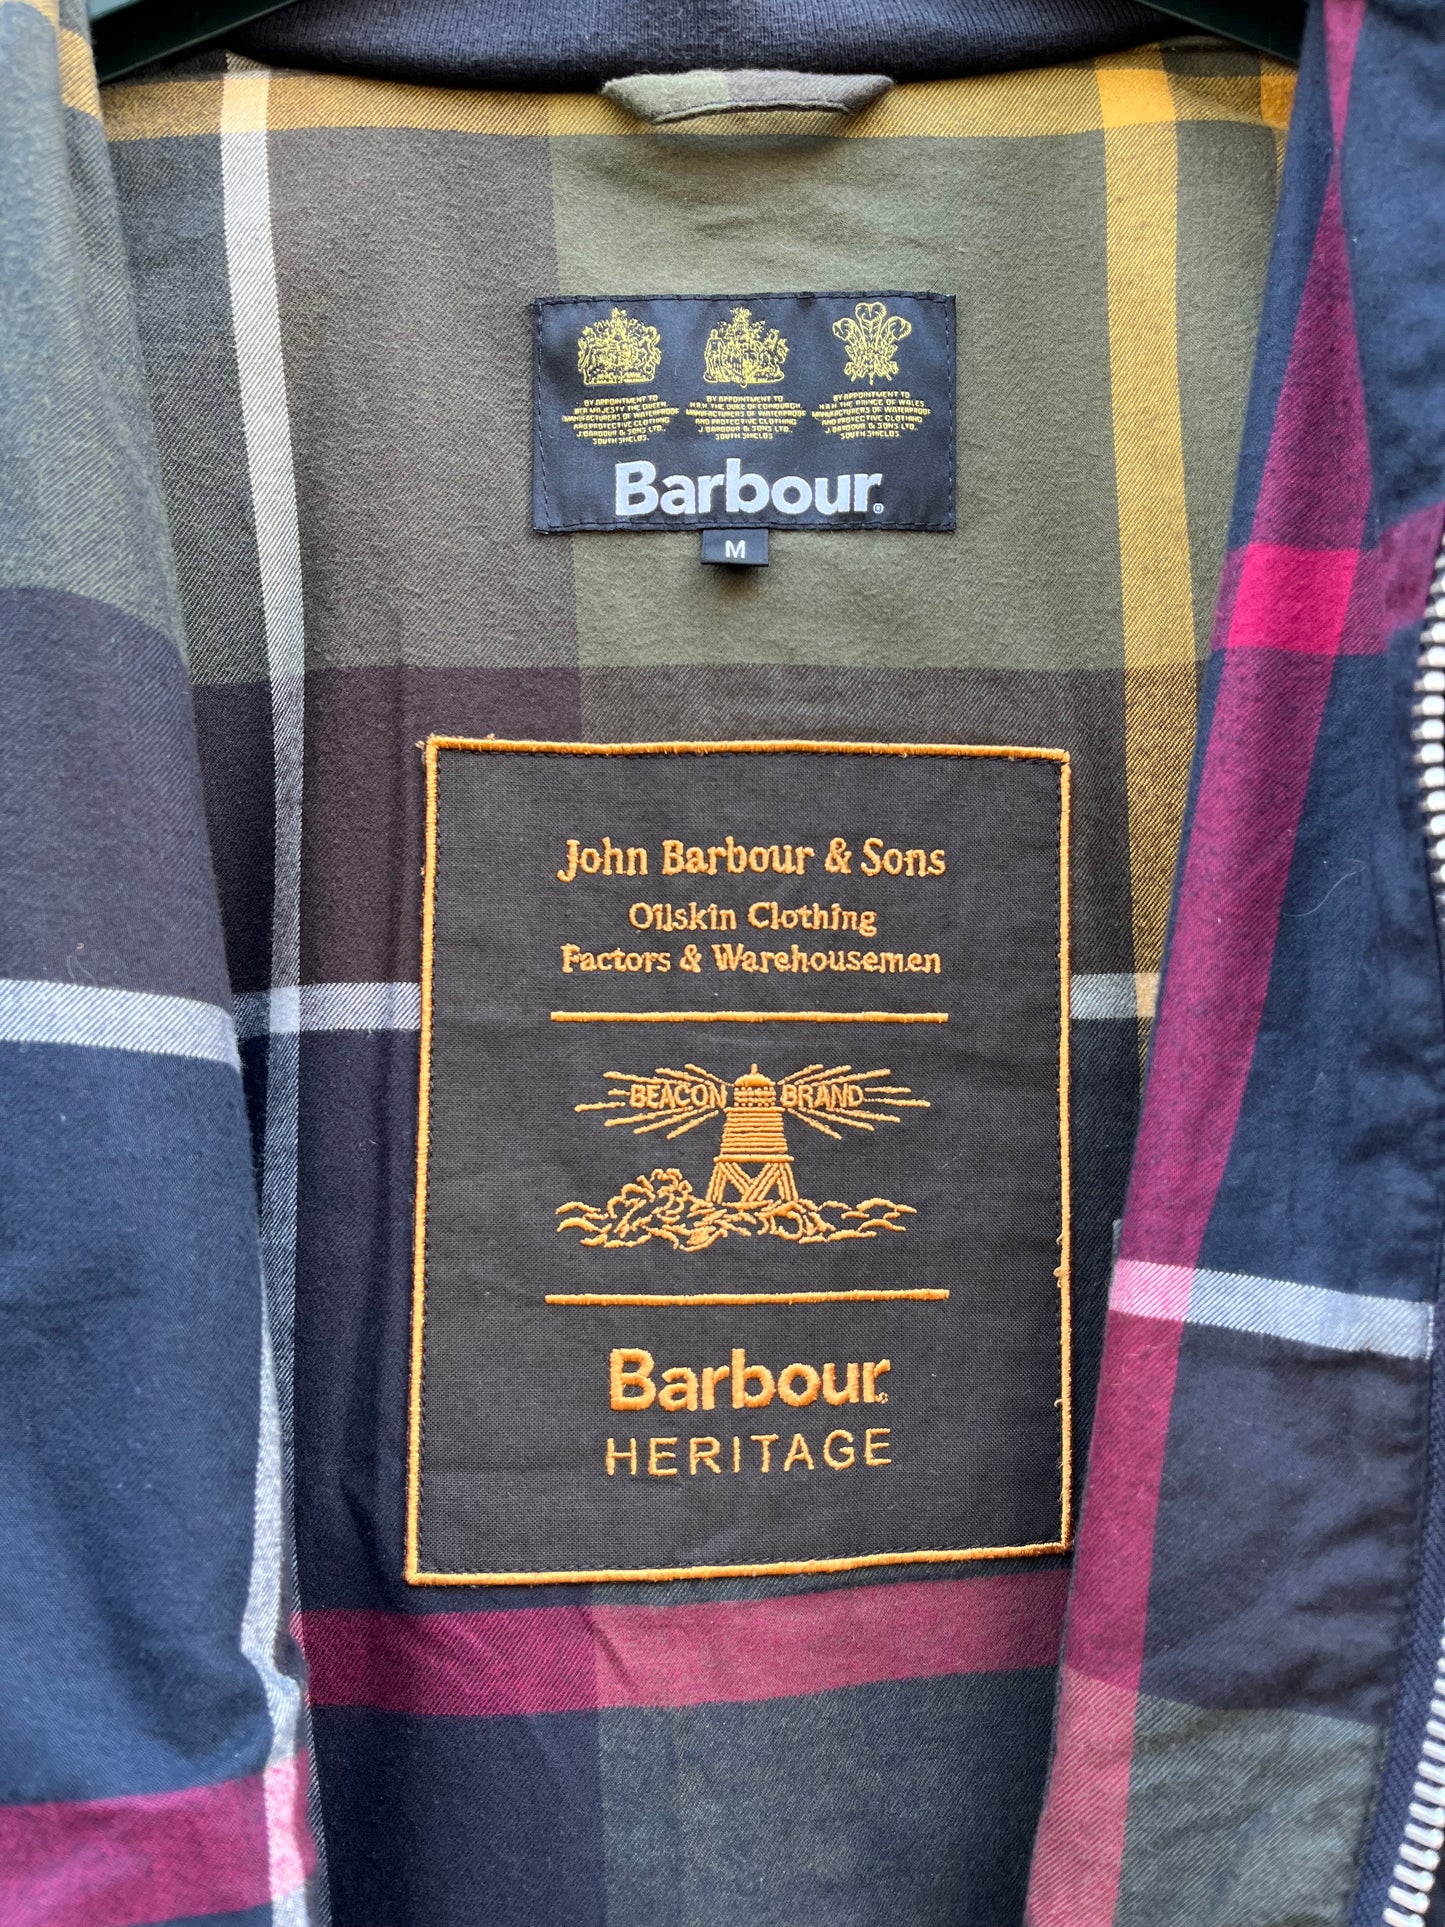 Giacca Barbour Heritage Uomo Blu Ash Medium - Navy Man Ash Wax jacket size M